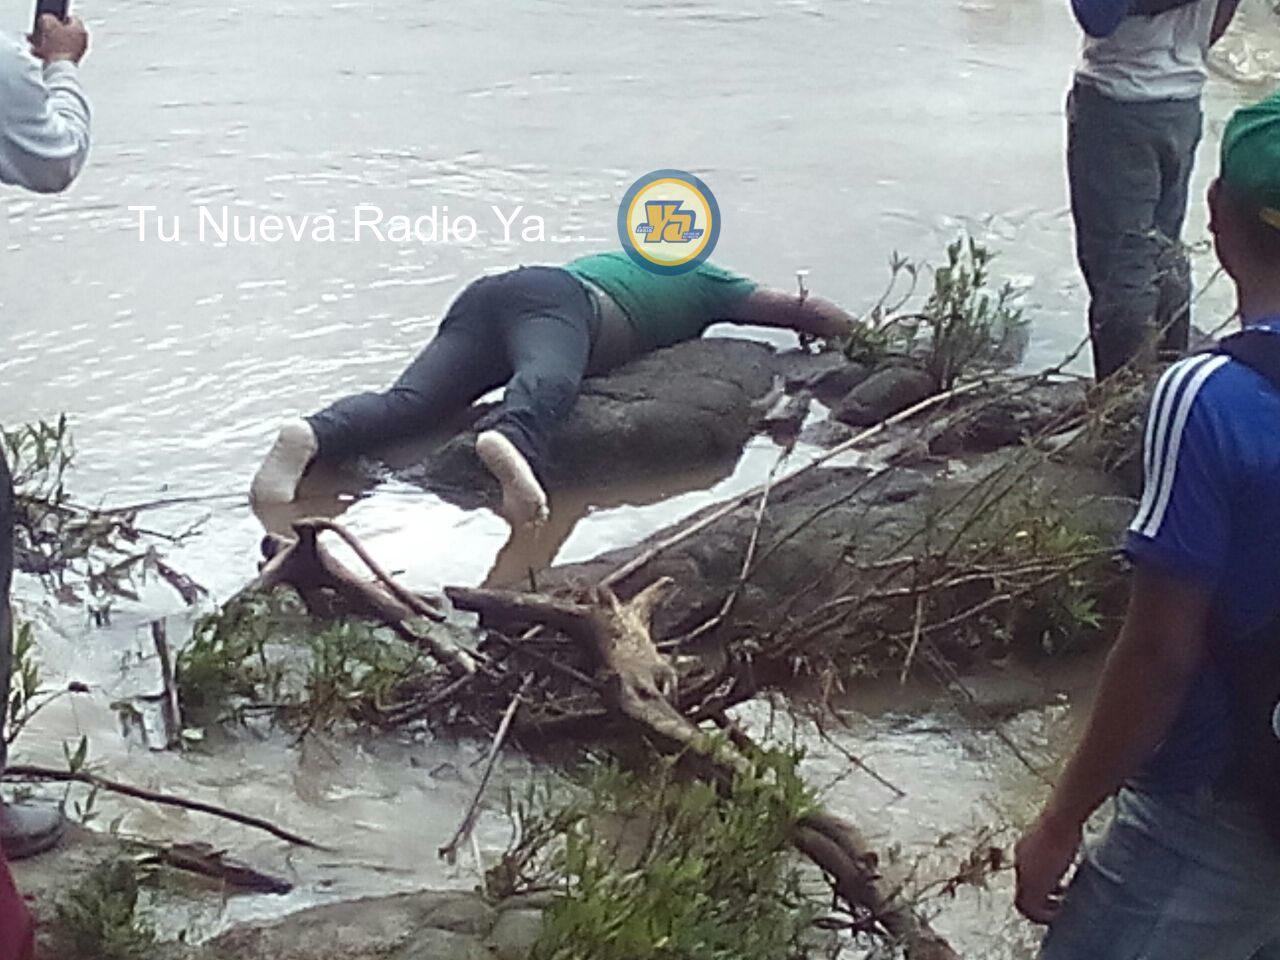 Desconocido es encontrado flotando muerto en río de Raití, Jinotega - La Nueva Radio YA